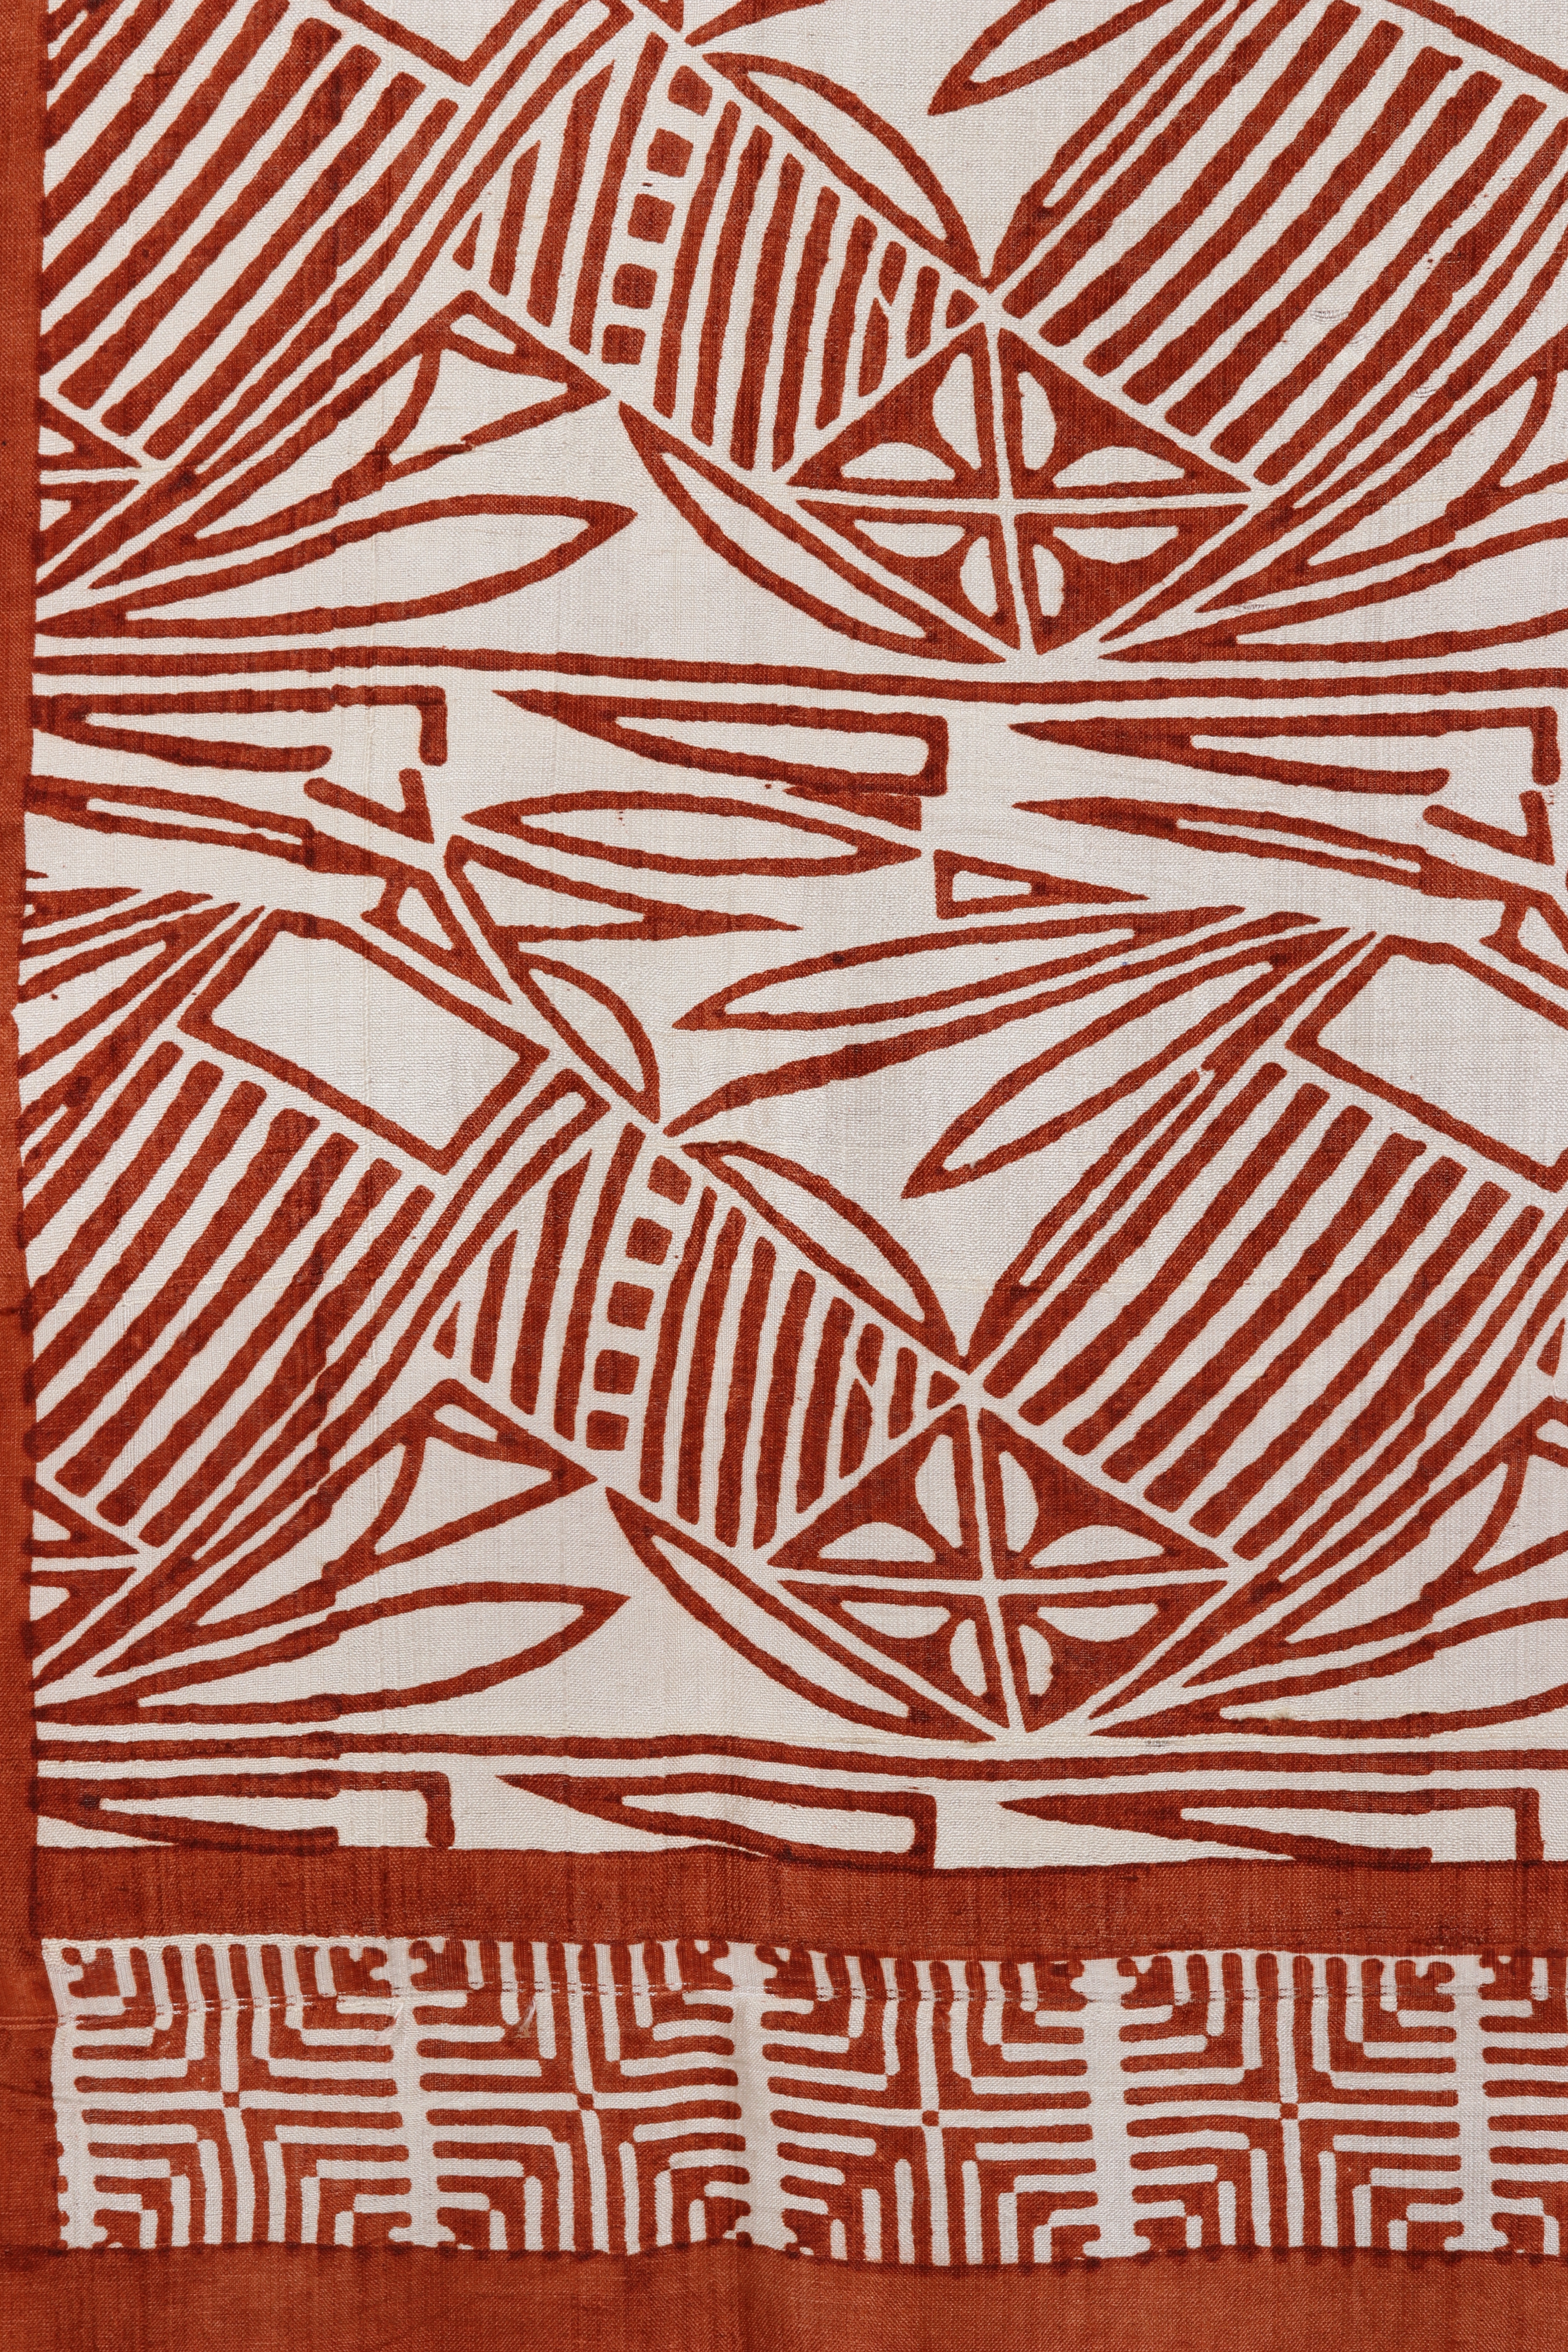 Fular de seda con estampado de bloques - Bufanda cruzada de seda abstracta color rojizo y marfil de la India